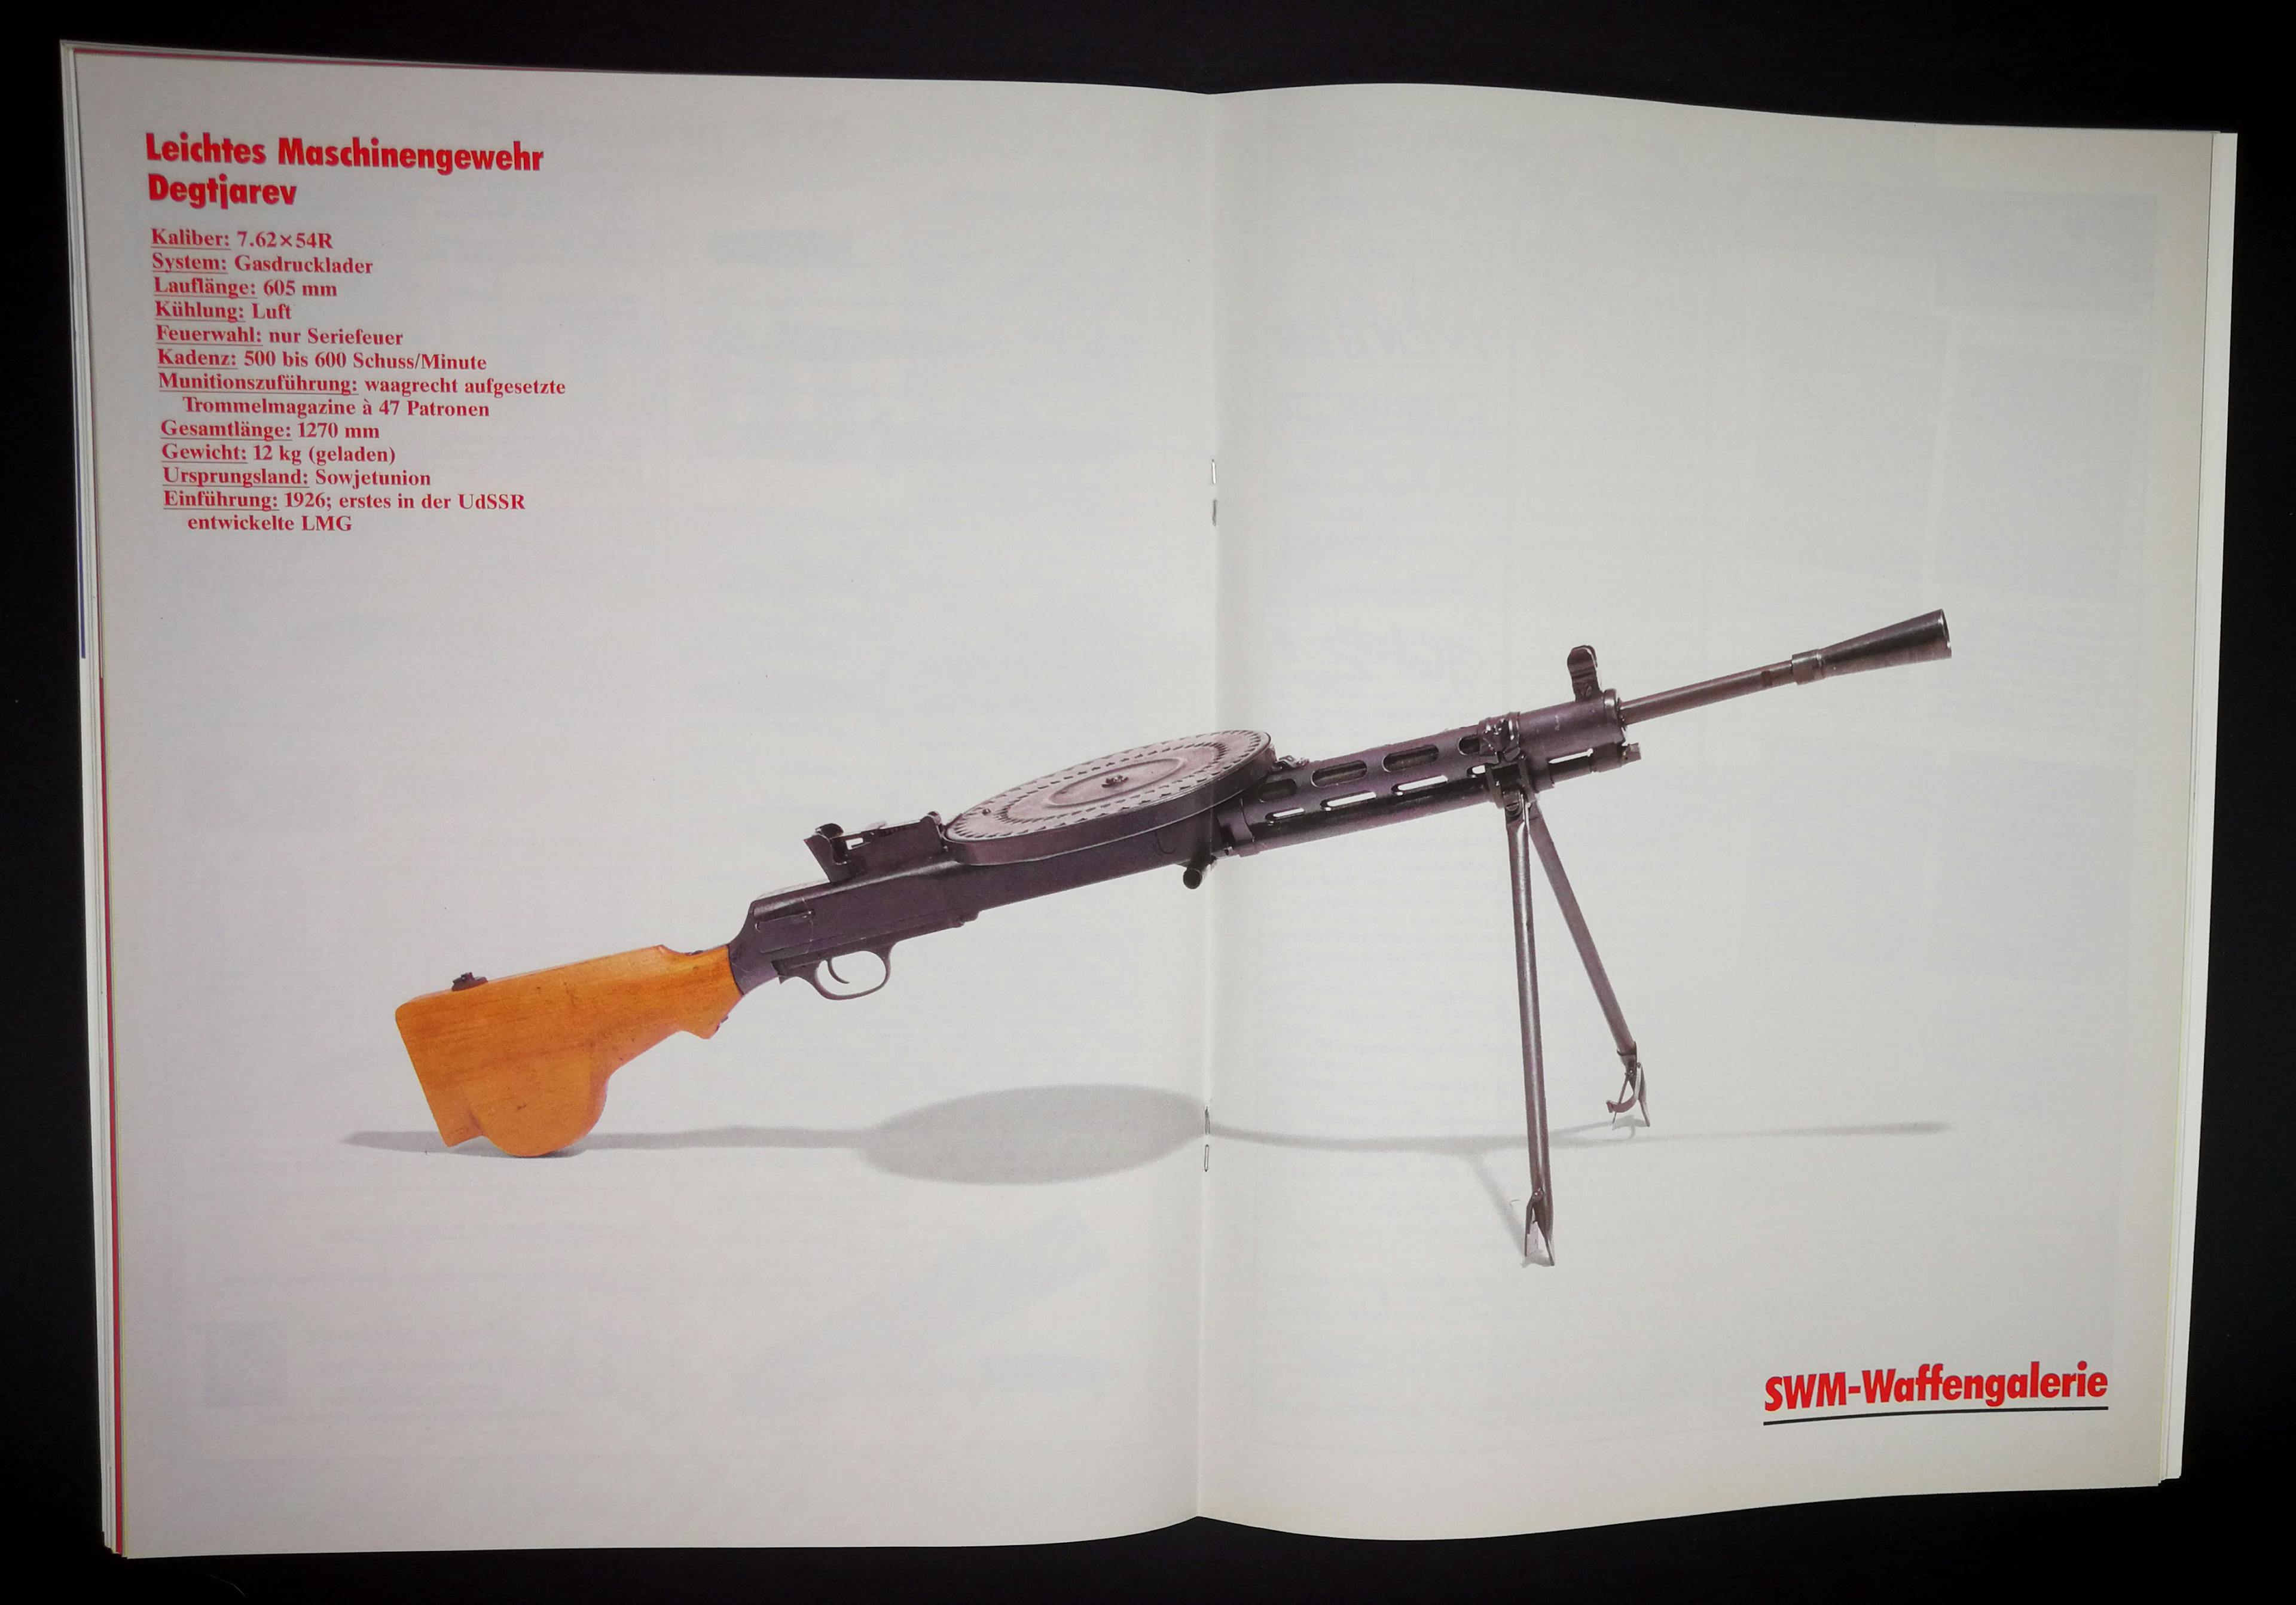 Das diesmonatige Centerfold stellt das "Gewehr mit dem Tellermagazin", das Sovjetischen Degtjarev LMG ins Rampenlicht.
